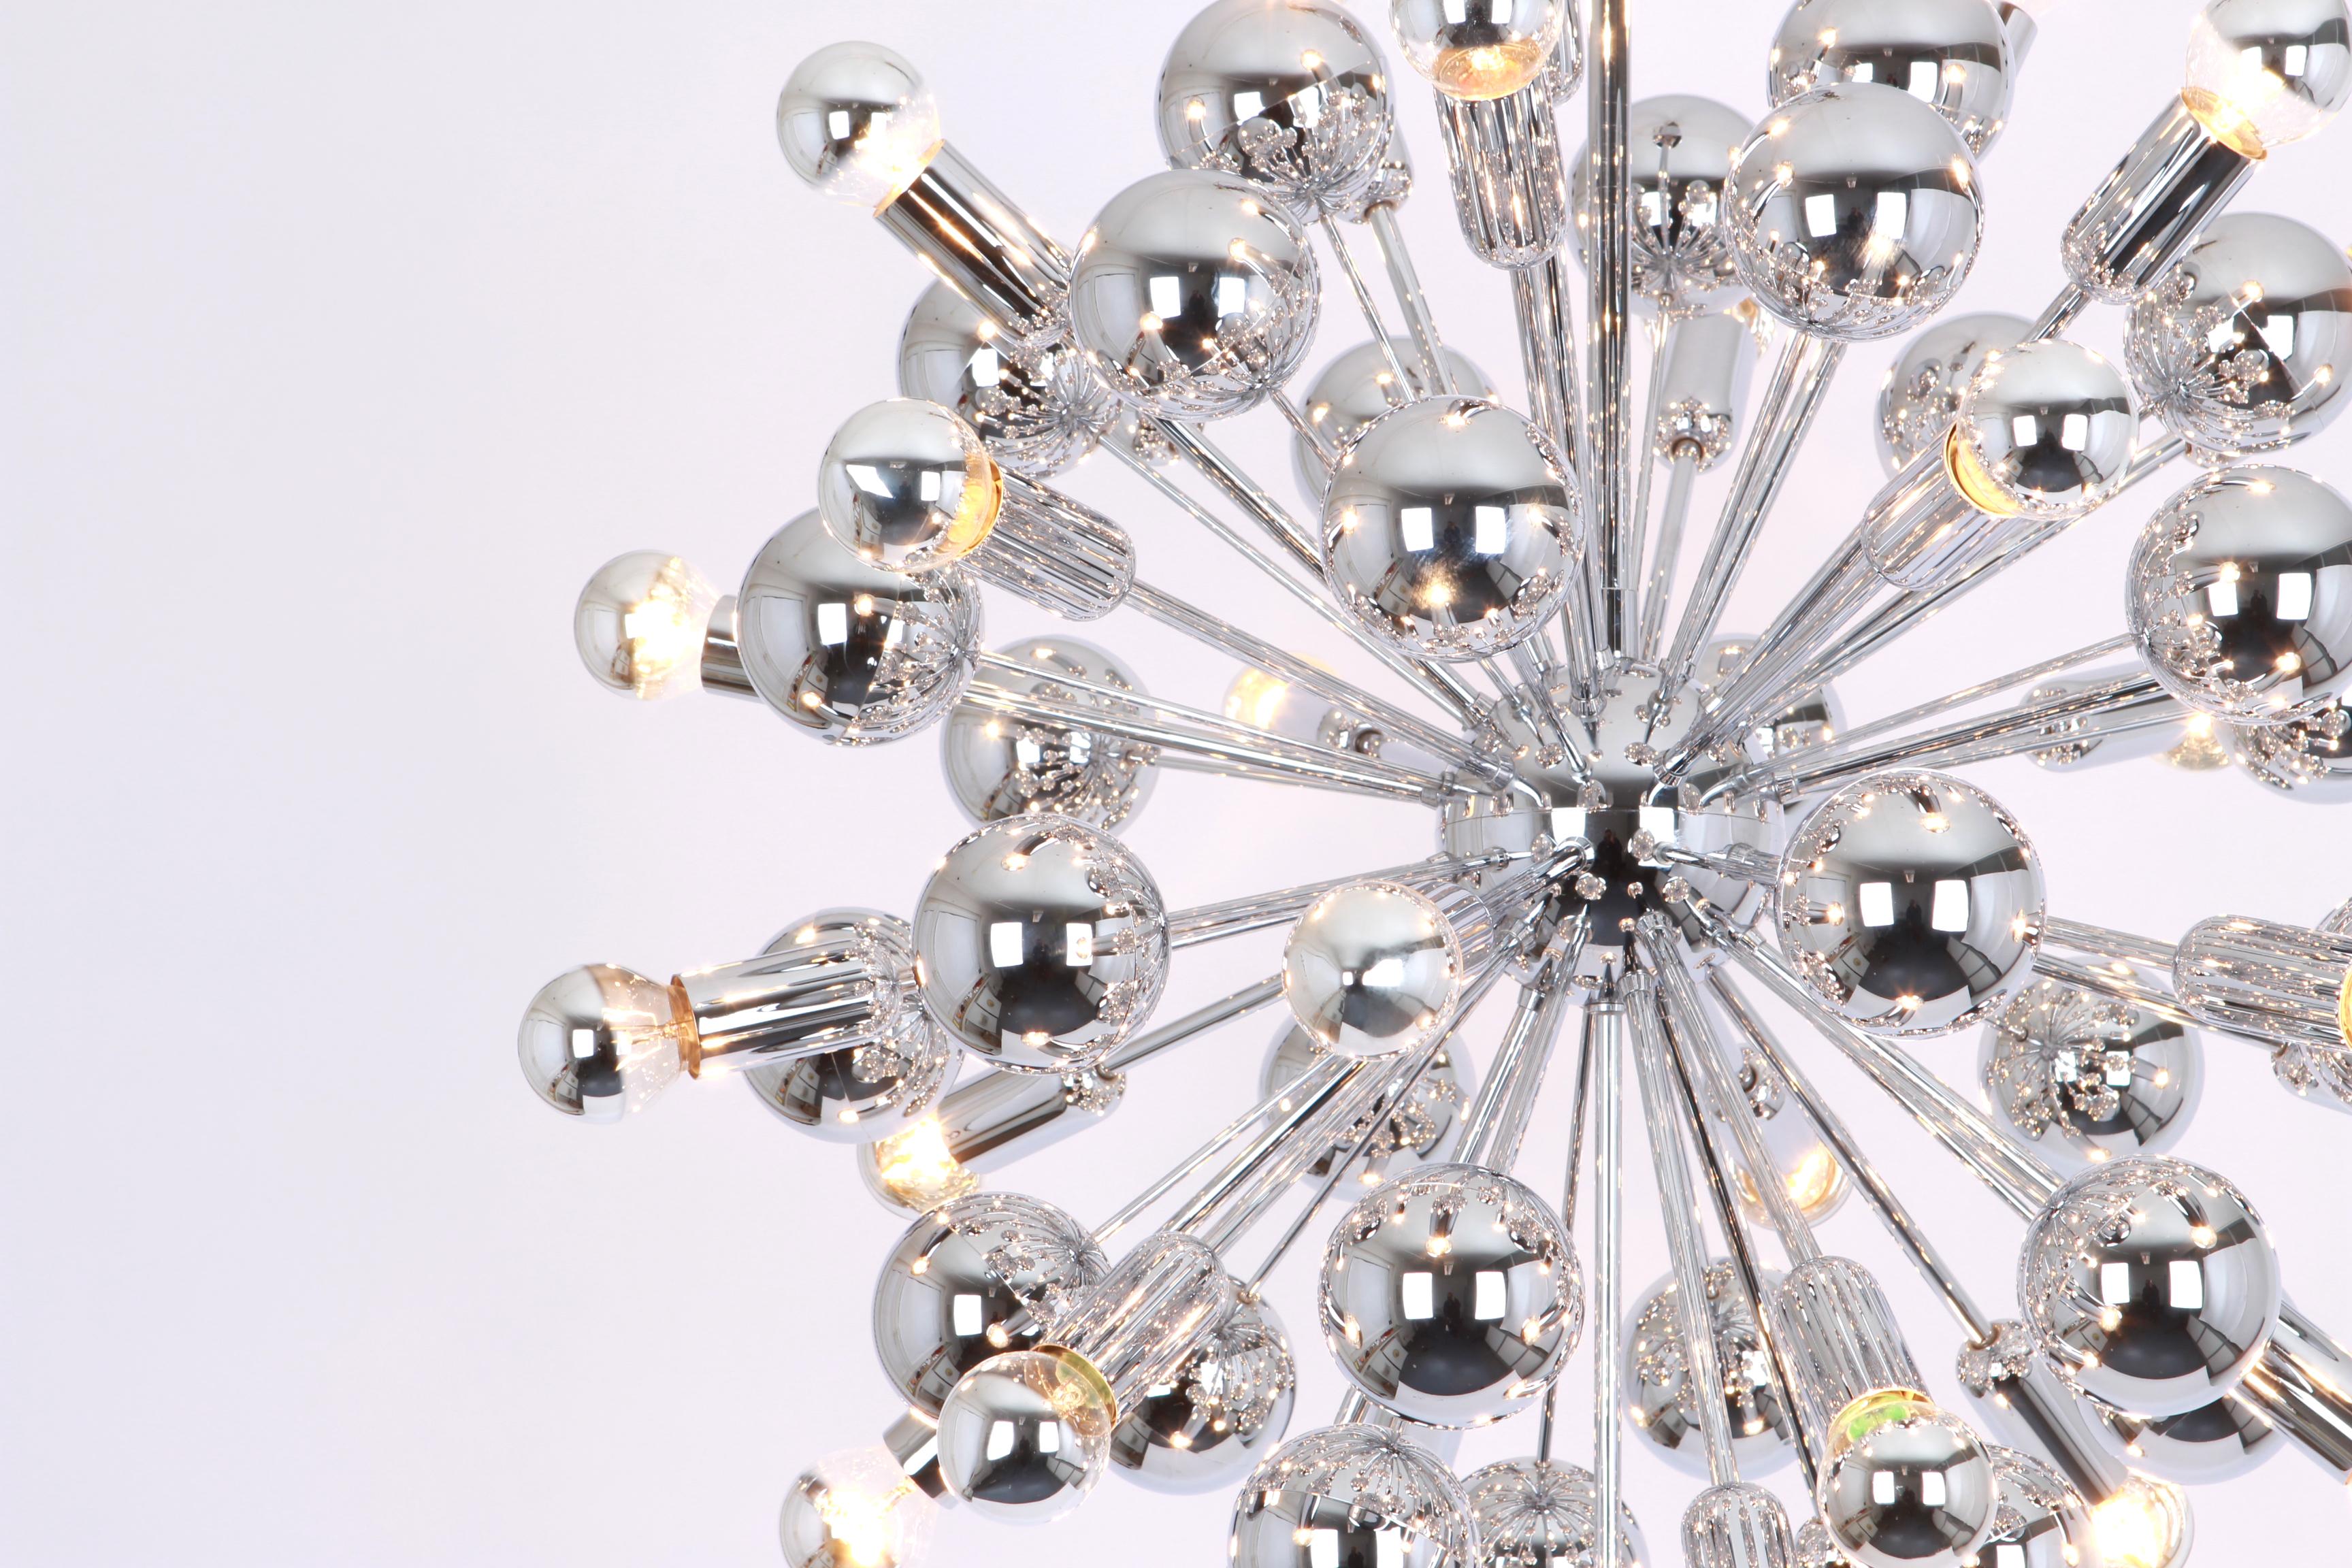 Exklusive und seltene verchromte Sputnik-Pendelleuchte, entworfen von Cosack in den 1970er Jahren.

Fassungen: Es braucht 31 x E14 kleine Glühbirnen-
Glühbirnen sind nicht enthalten. Es ist möglich, diese Leuchte in allen Ländern zu installieren